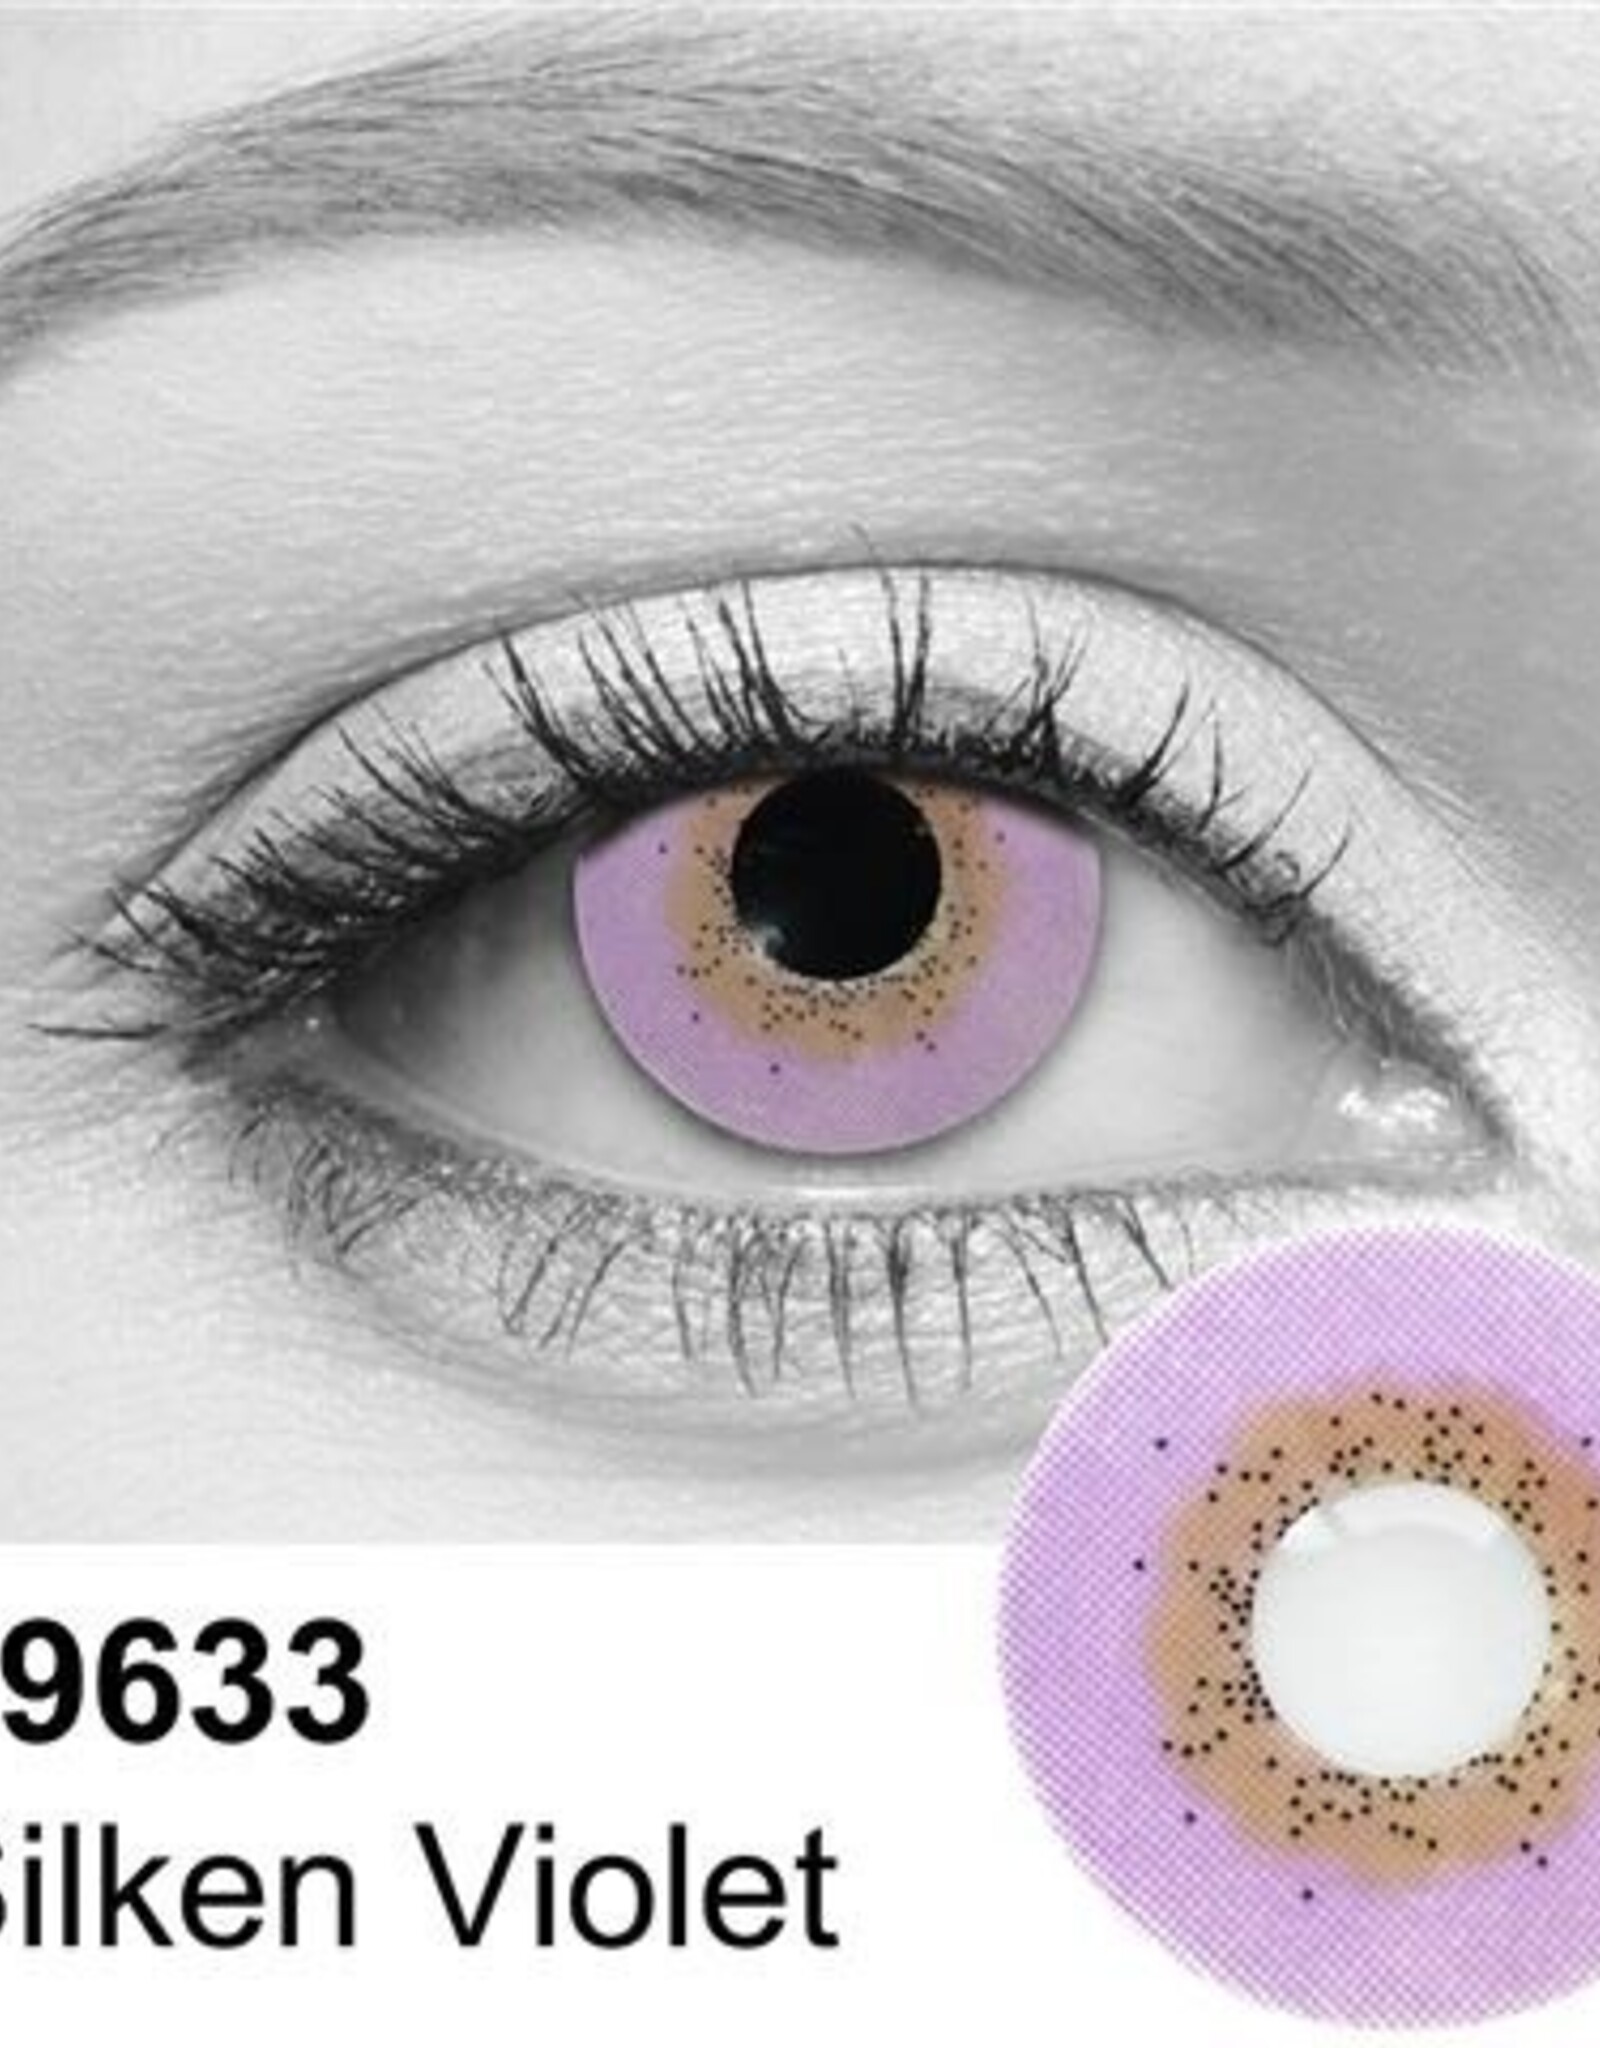 Silken Violet Contact Lens